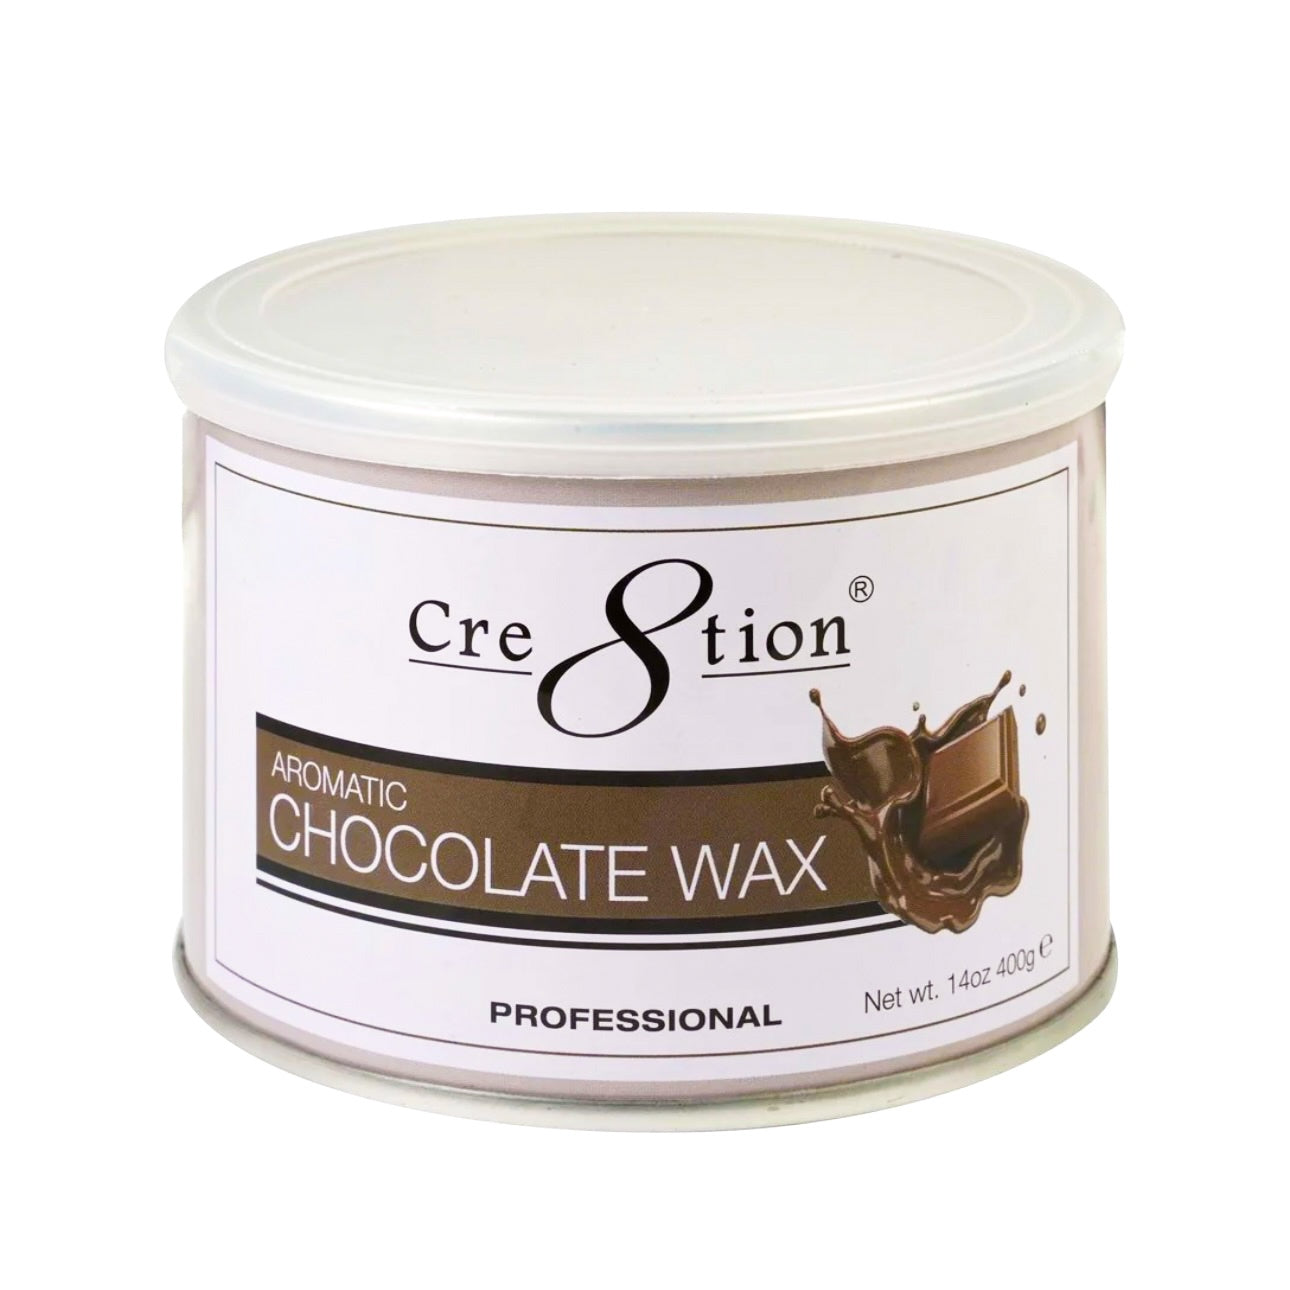 Cre8tion - Aromatic Chocolate Wax (Soft Wax)